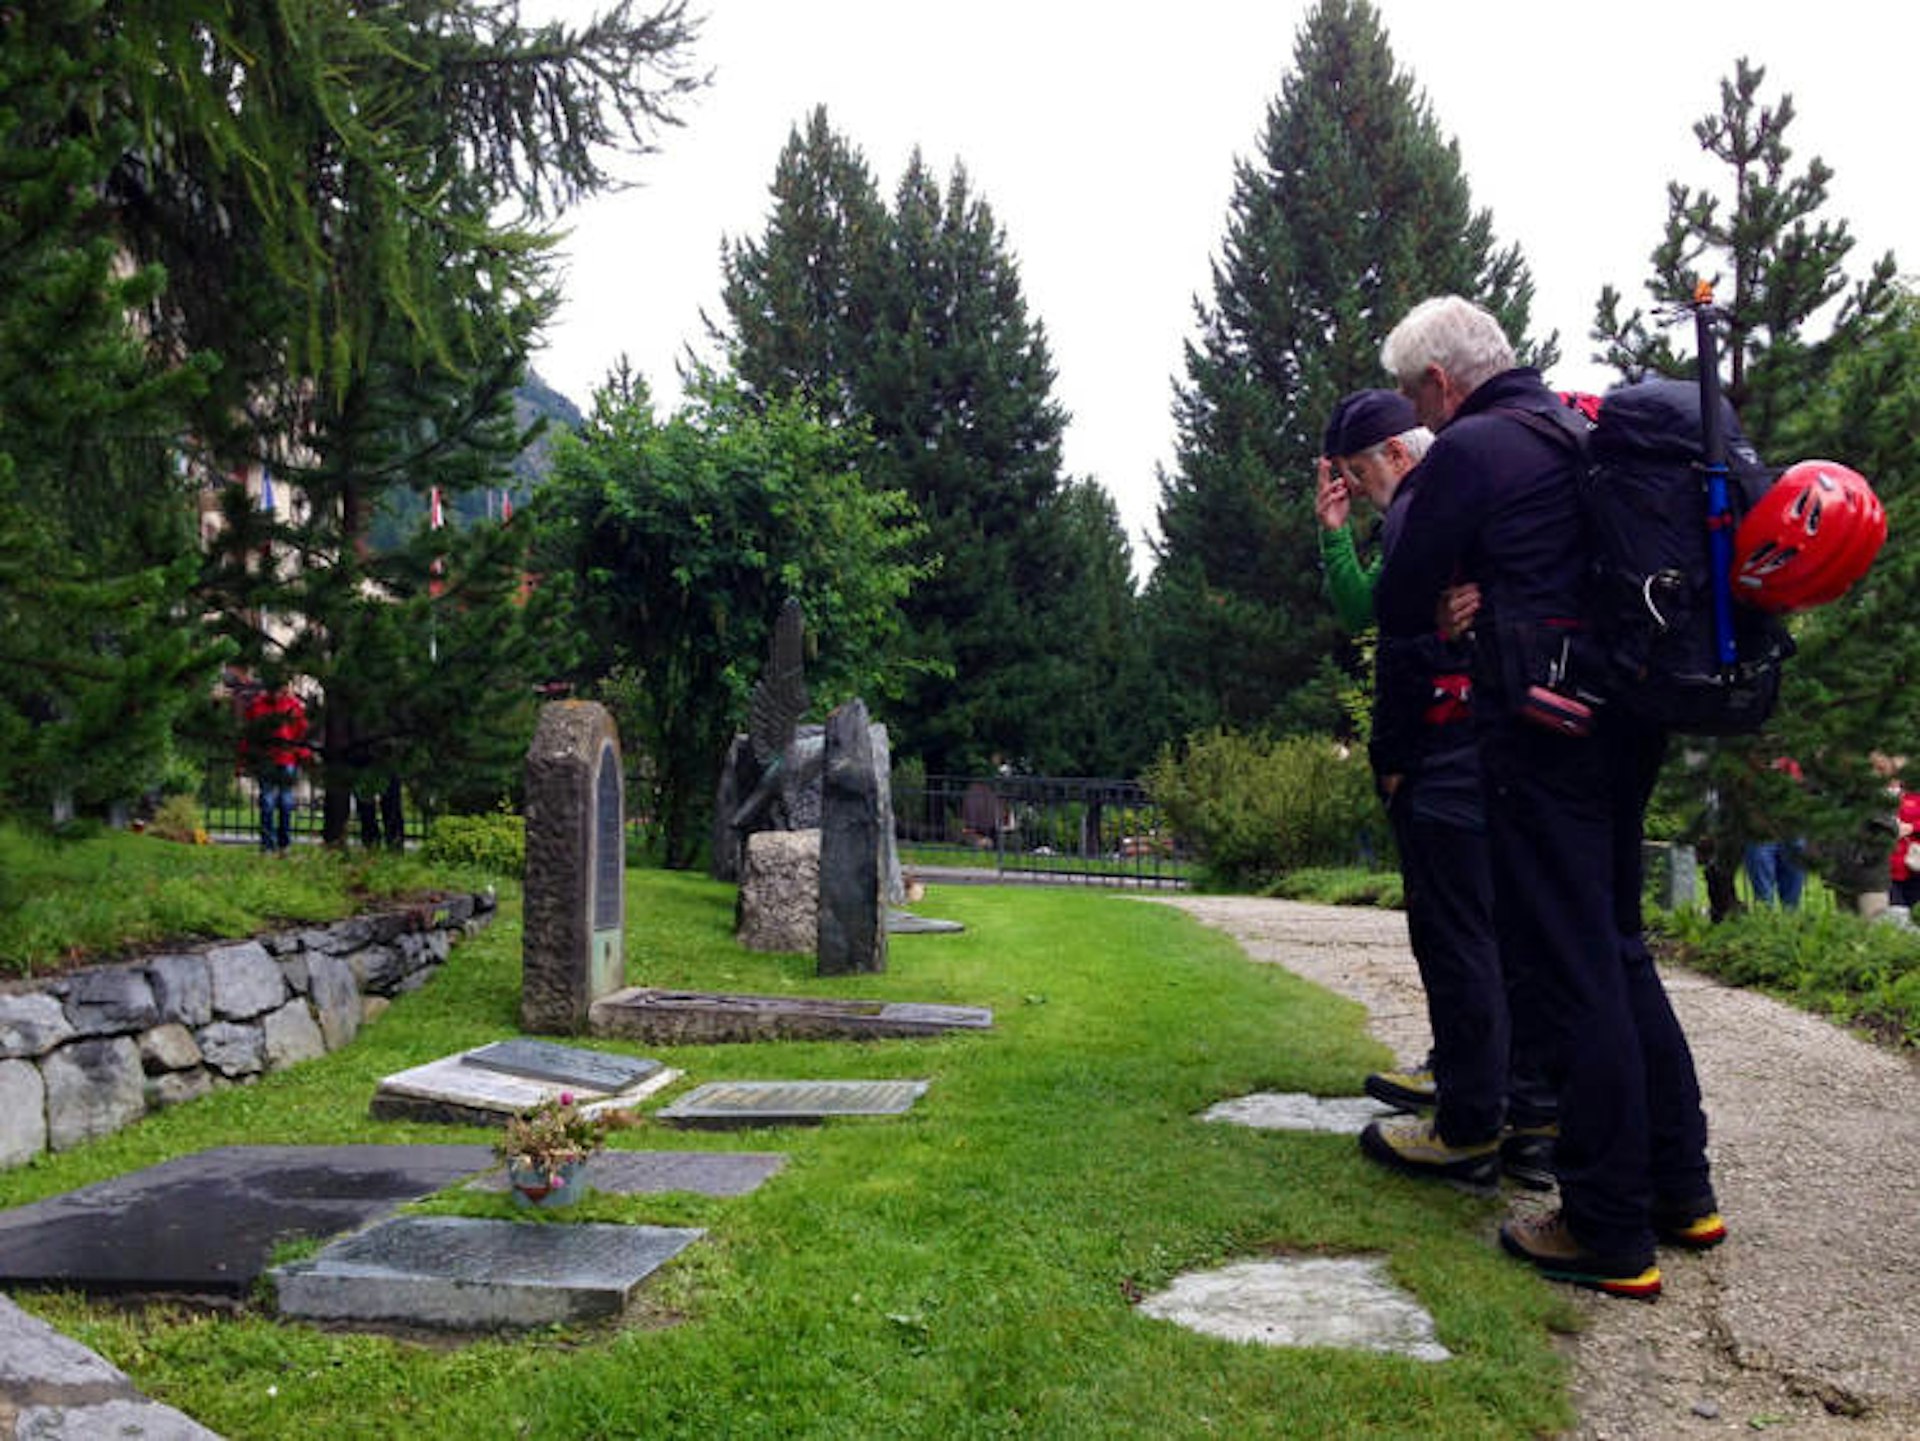 Gravestones of those who have died on Zermatt's mountains, Zermatt cemetery.